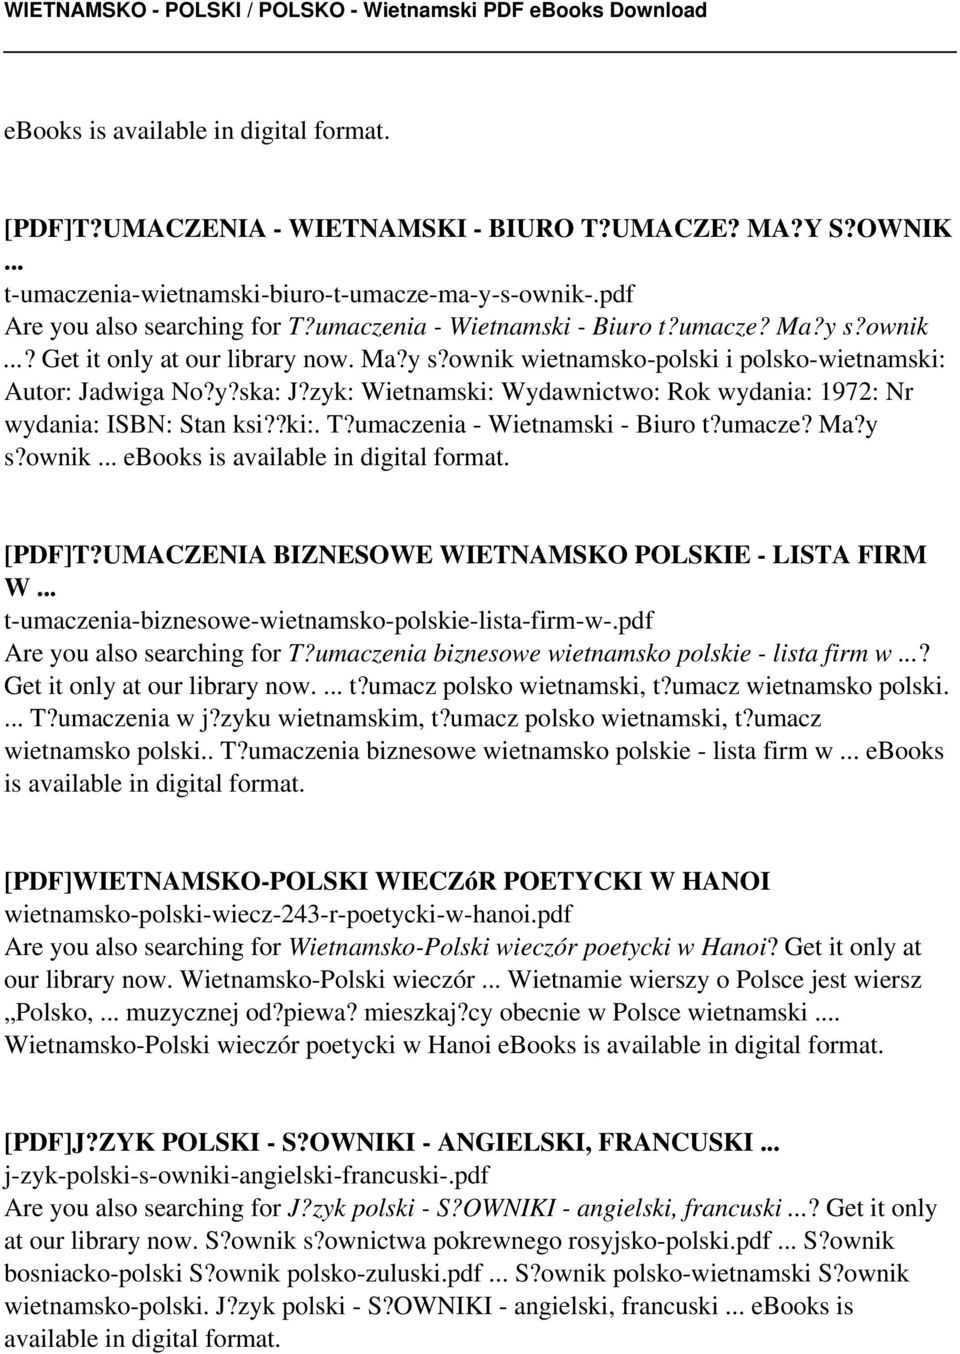 zyk: Wietnamski: Wydawnictwo: Rok wydania: 1972: Nr wydania: ISBN: Stan ksi??ki:. T?umaczenia - Wietnamski - Biuro t?umacze? Ma?y s?ownik ebooks is available in digital format. [PDF]T?